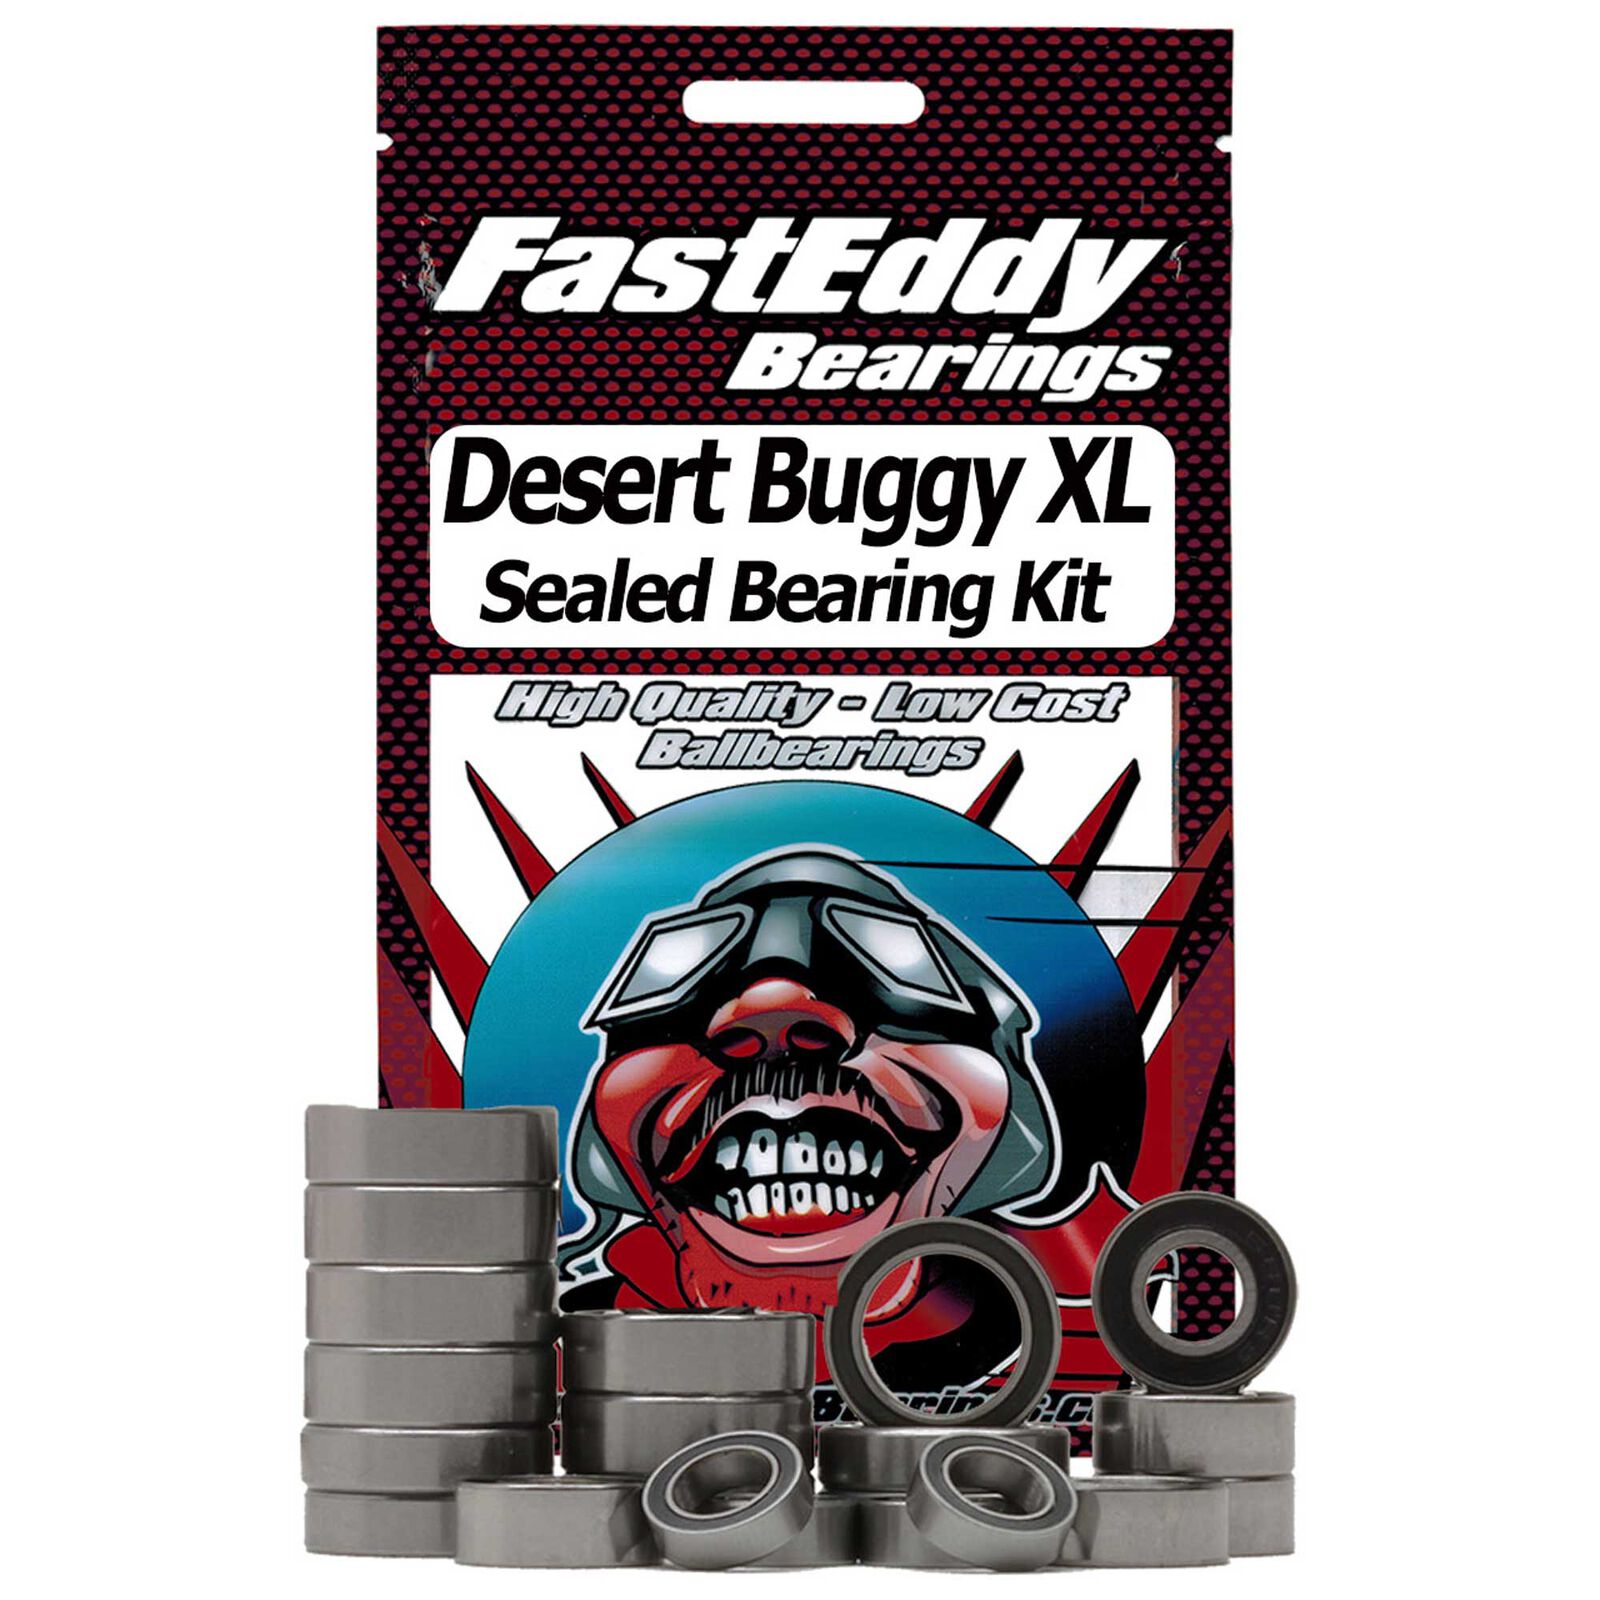 Sealed Bearing Kit: Losi Desert Buggy XL